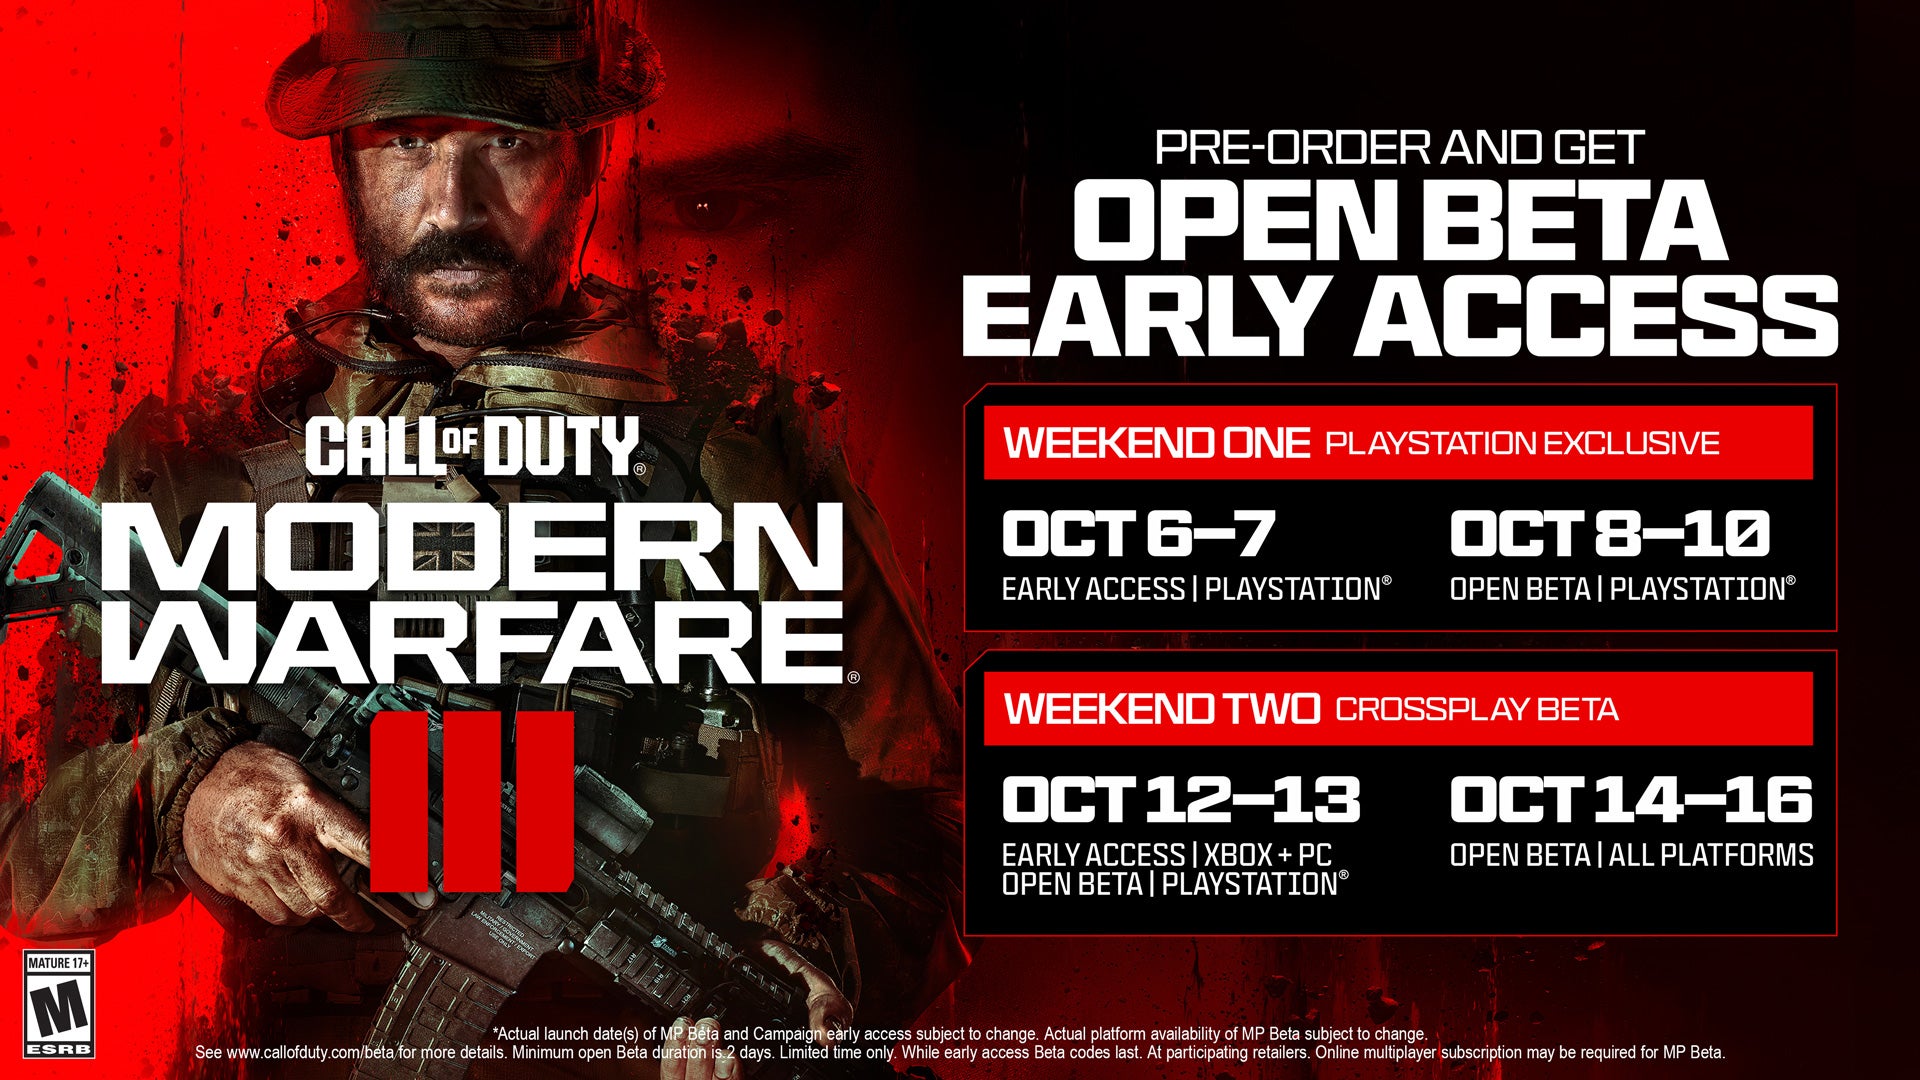 El Capitán Price de Call of Duty estuvo junto a las fechas de la beta abierta y los períodos de acceso anticipado de Modern Warfare 3.